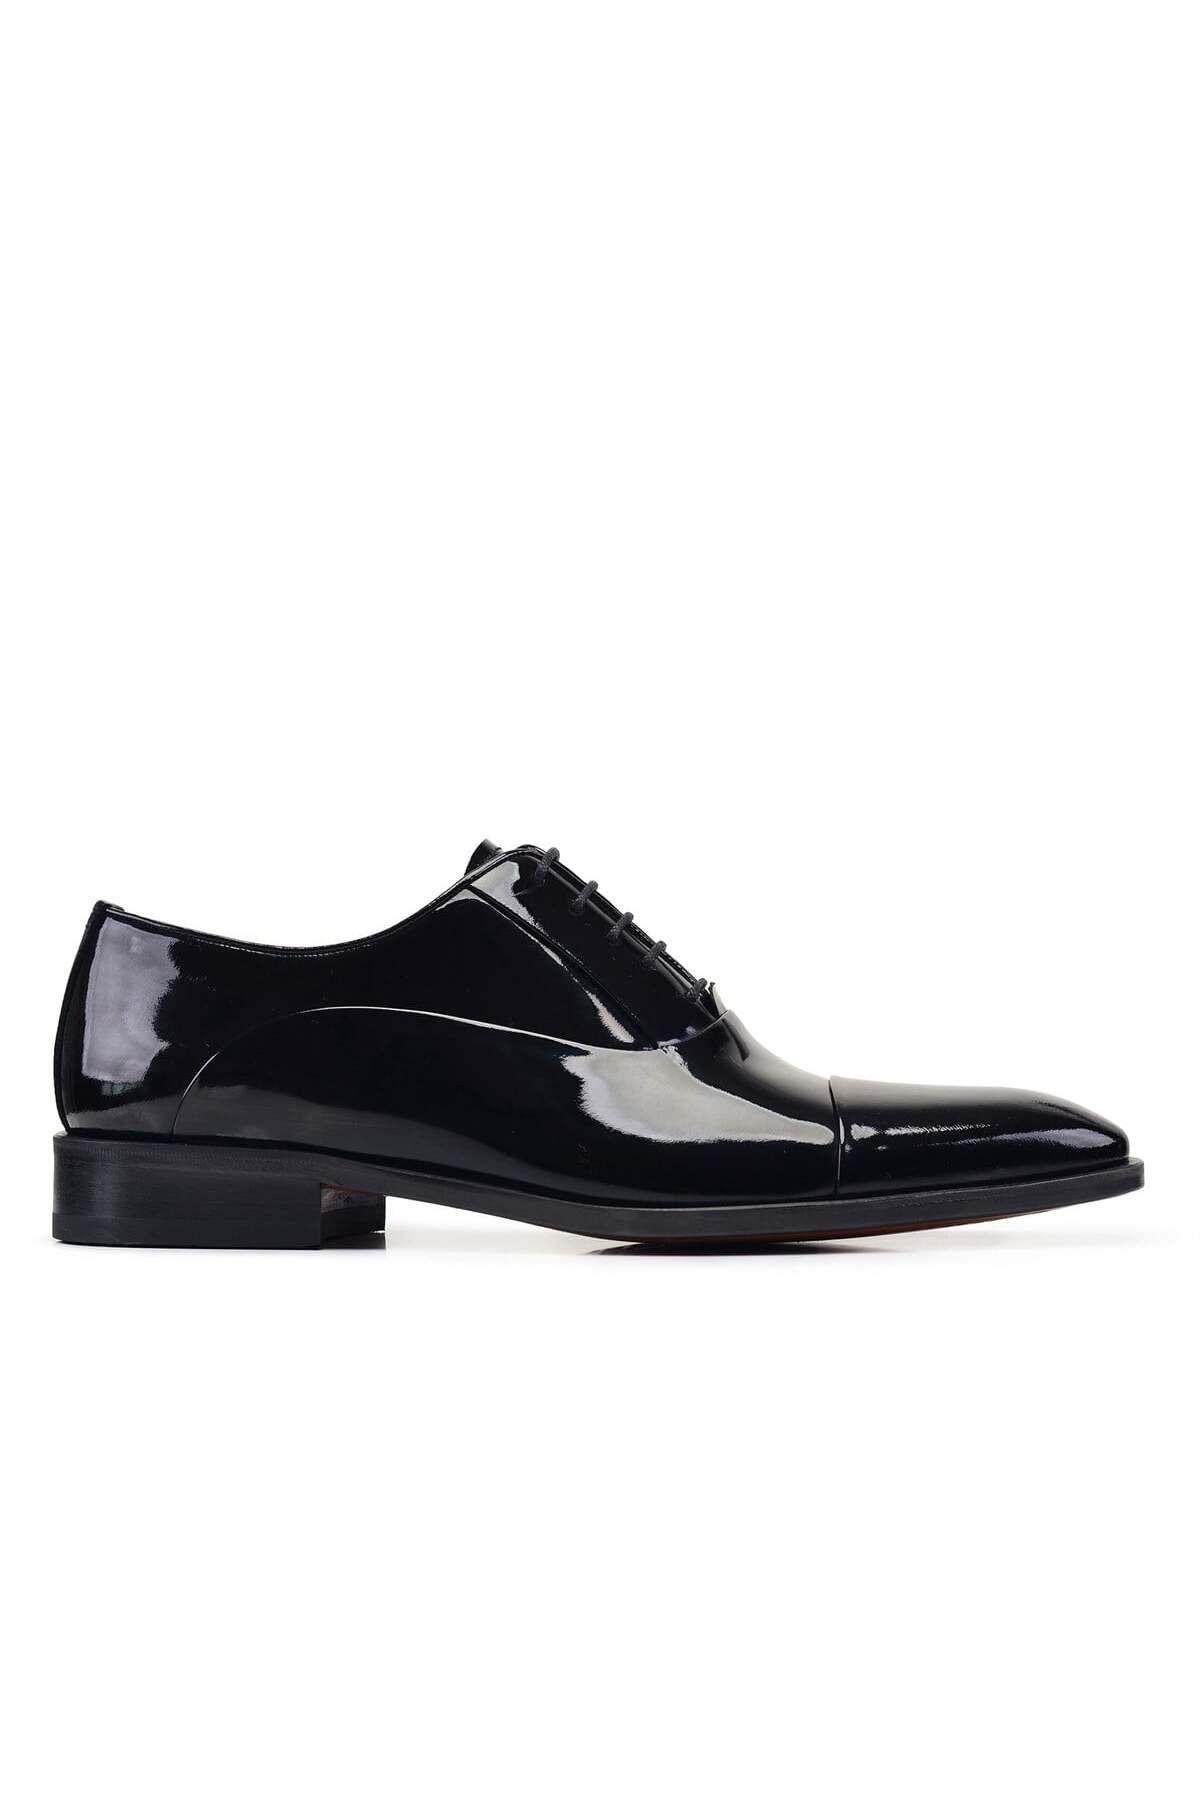 Nevzat Onay Siyah Rugan Klasik Bağcıklı Kösele Erkek Ayakkabı -02701-